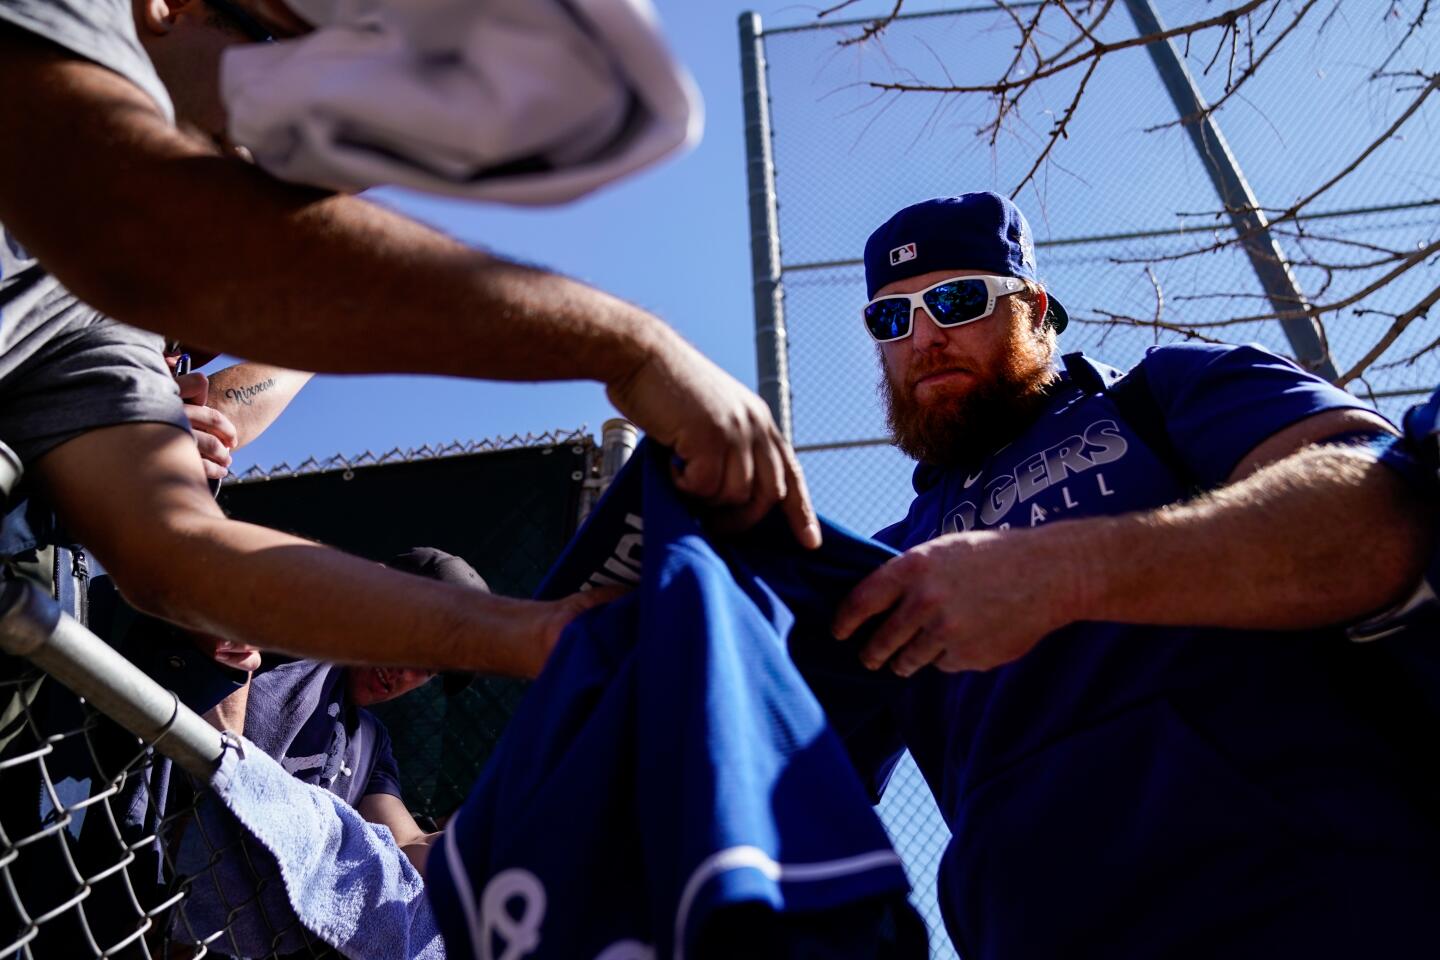 Dodgers slugger Justin Turner autographs memorabilia for fans during spring training at Camelback Ranch